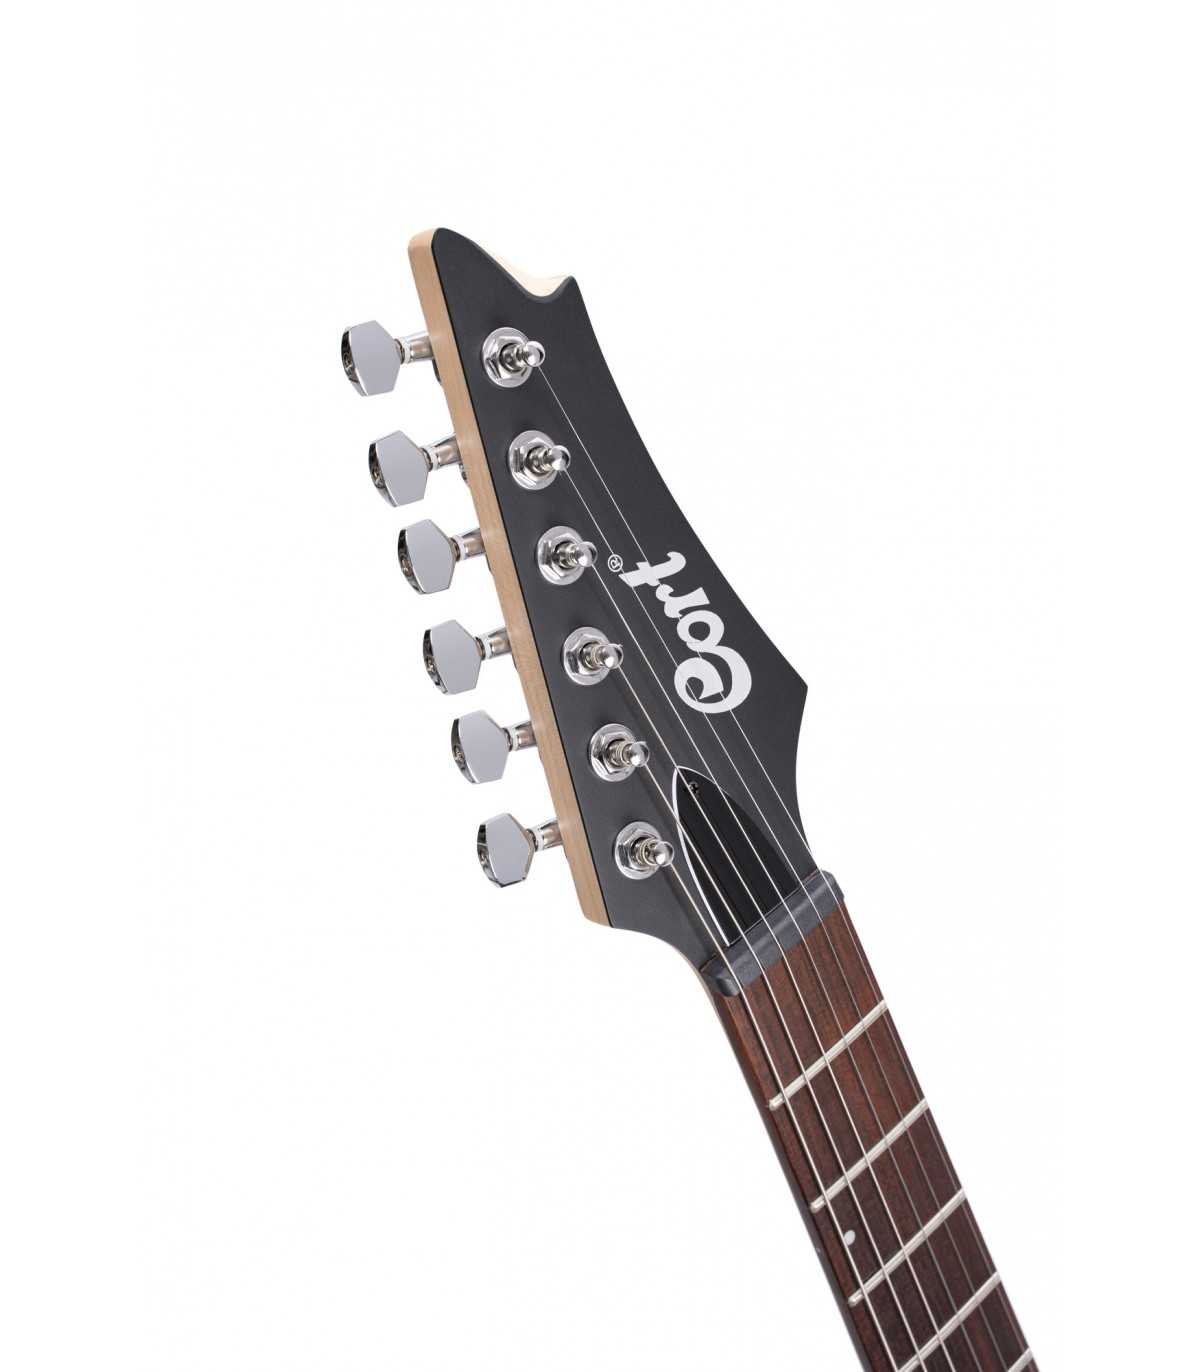 Cort X100 Noir pores ouverts Guitare électrique gaucher série X 